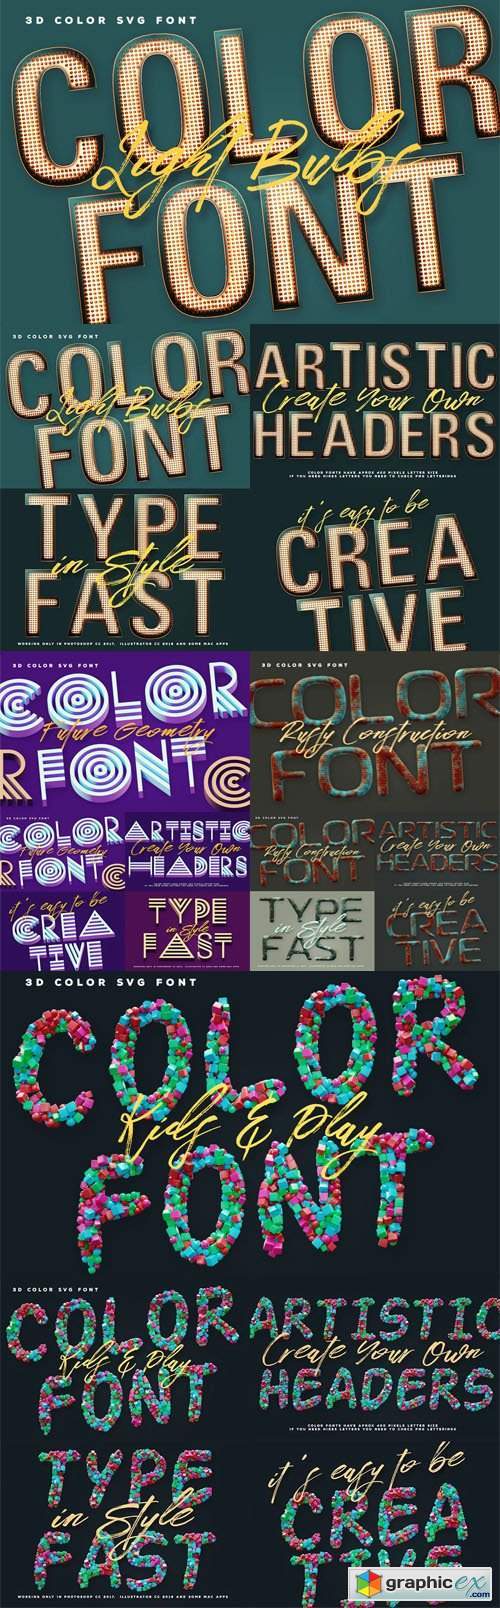 6 Color SVG Fonts Vol.2